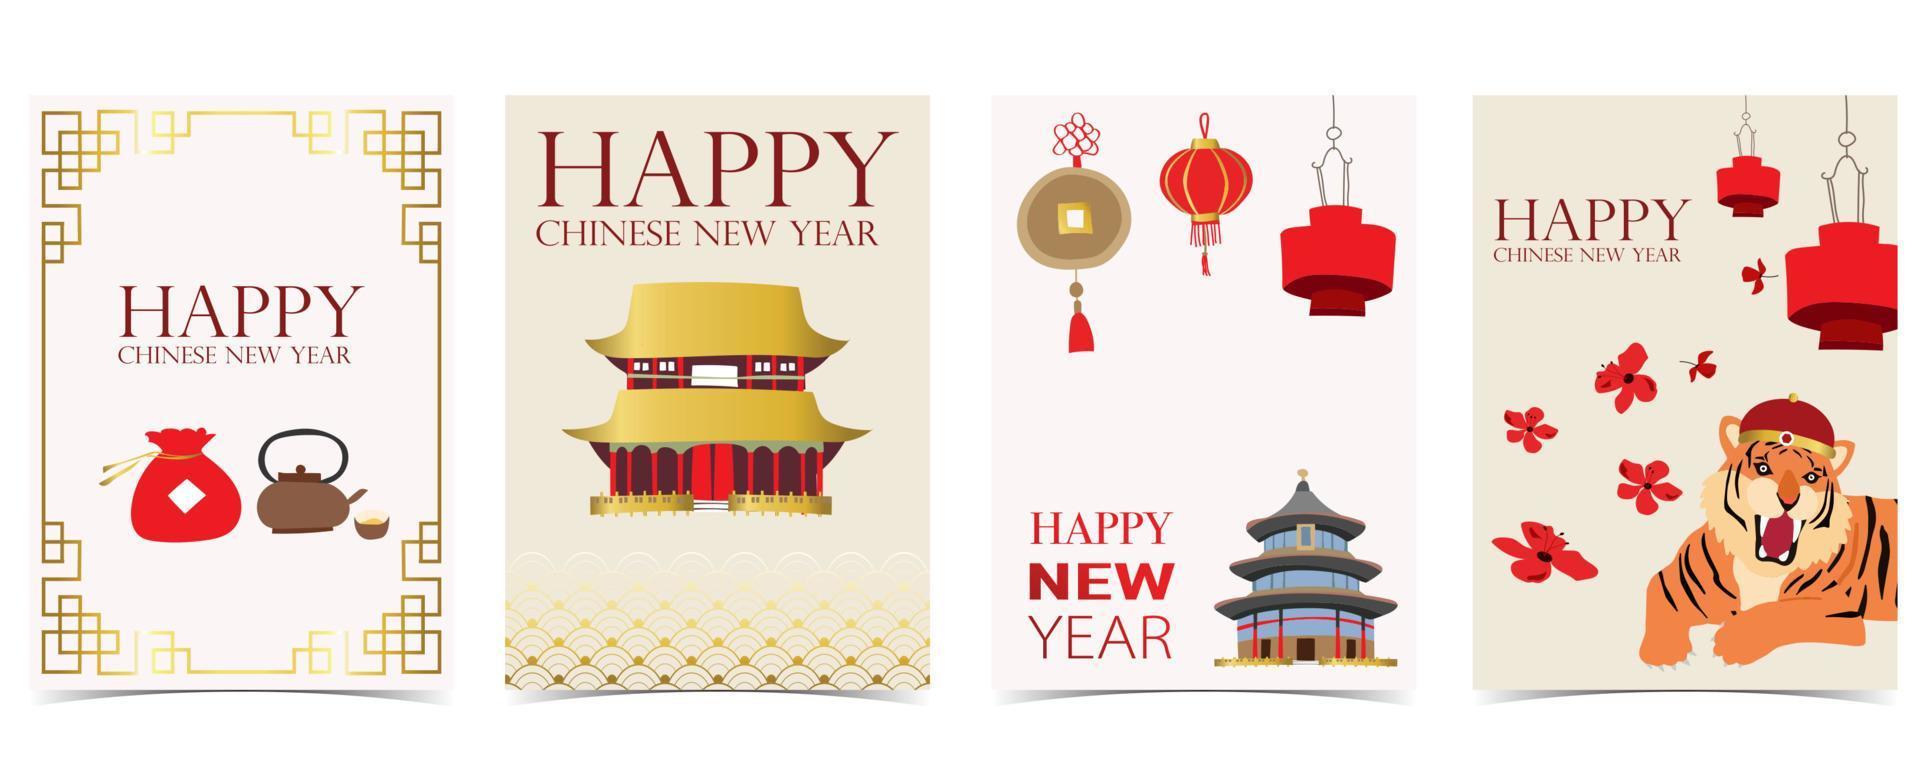 cartão vermelho ouro de ano novo chinês com tigre, flor, ilustração em vetor lunar. editável para site, convite, cartão postal e adesivo